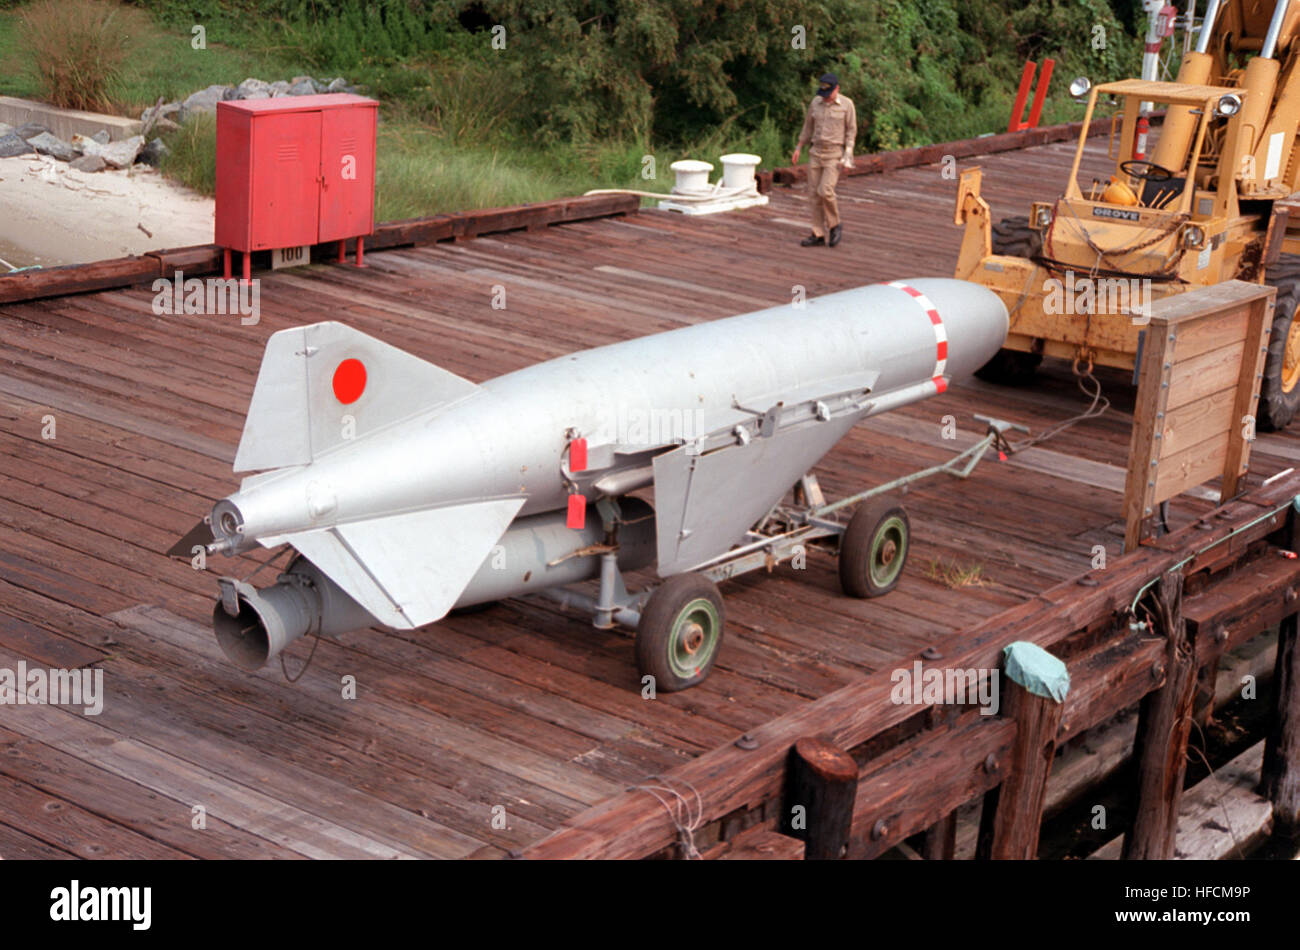 Un P-15 SS-N2-c de la SSM Styx-soviétique construit Tarantul missiles de la classe je l'USNS corvette HIDDENSEE (185NS9201). Ce premier missile soviétique avancés est entré en service opérationnel en 1973. Il utilise un combustible solide pour booster le lancement/phase d'accélération et d'un carburant liquide moteur turboréacteur sustainer pour la phase de croisière. Les 21 mètres de long et pèse 5 570 livres de missiles a une ogive de 1 100 livres. Il dispose d'une gamme de 45 milles marins et utilise un radar actif infrarouge système d'autoguidage. P-15 SS-N-2 Styx 5 c Banque D'Images